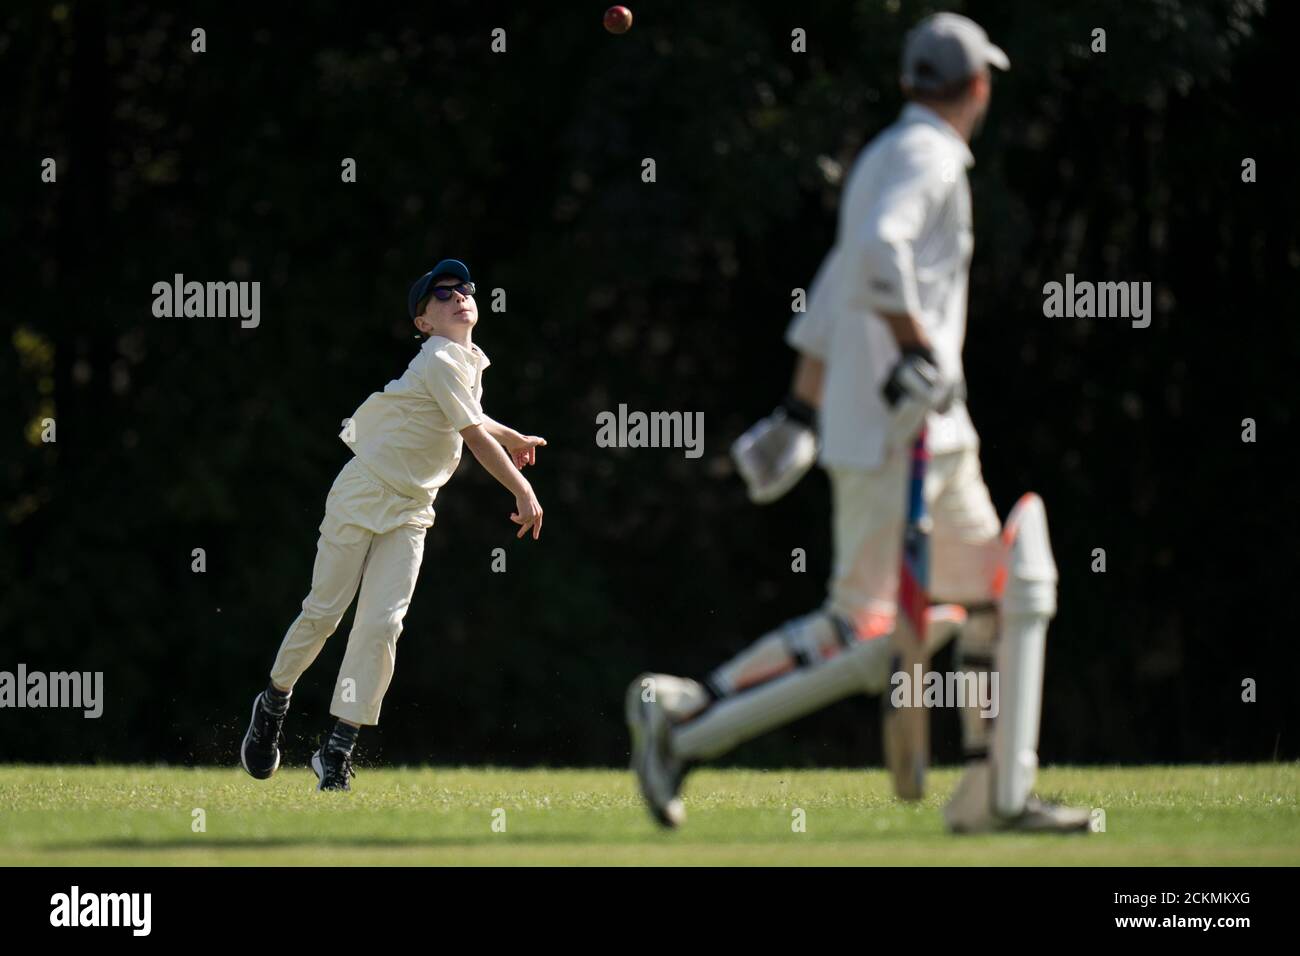 Giovane ragazzo che lancia la palla di cricket durante la partita di cricket villaggio per tutte le età. Foto Stock